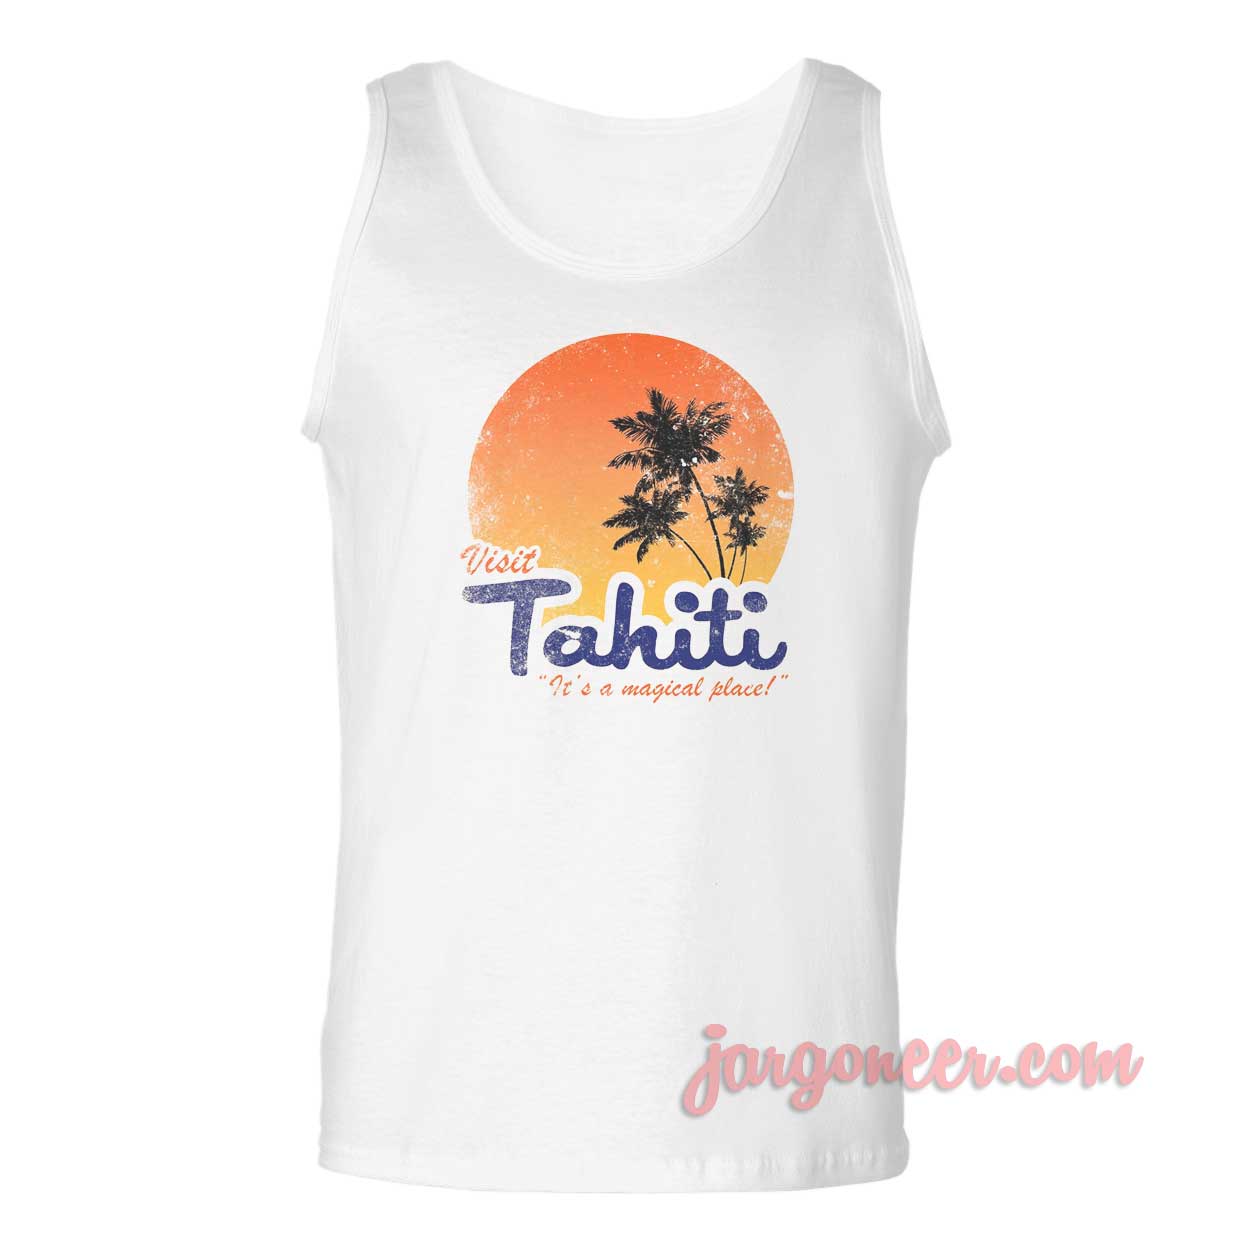 Visit Tahiti Magical Place - Shop Unique Graphic Cool Shirt Designs